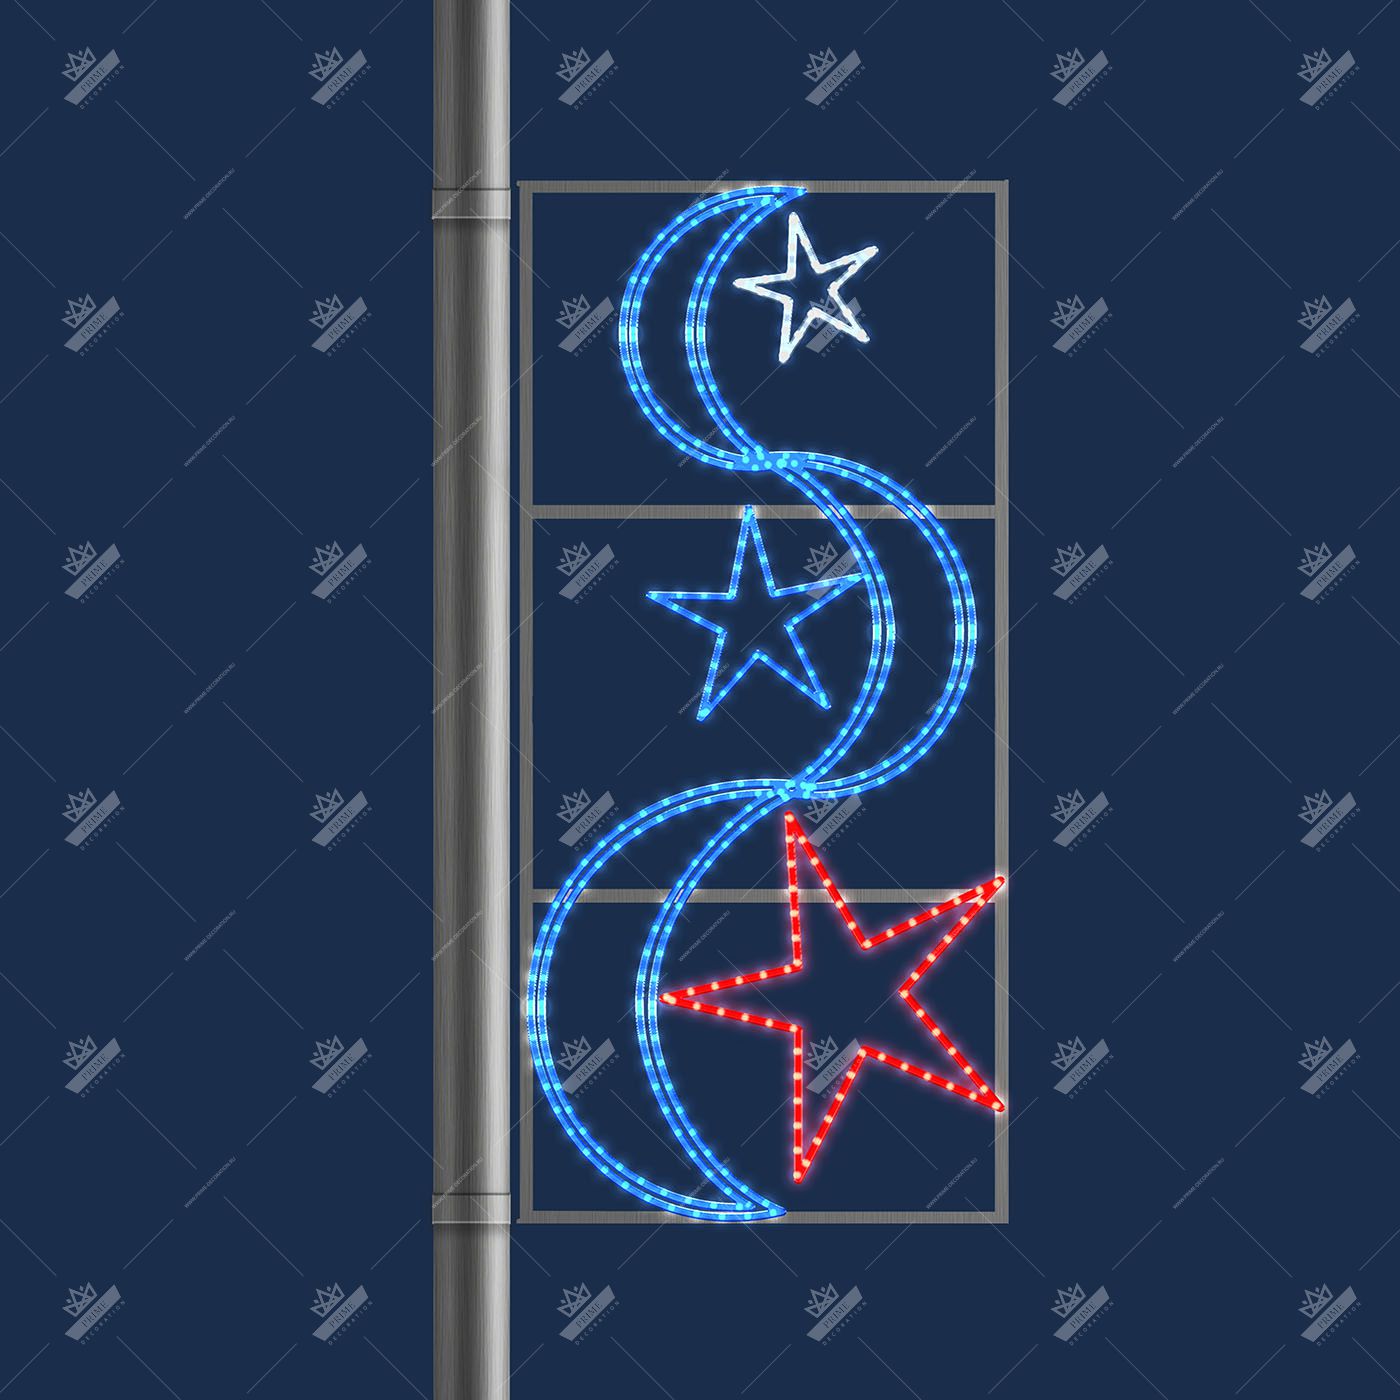 Консоль Триколор – 3 звезды и лента 8888888888888888888888